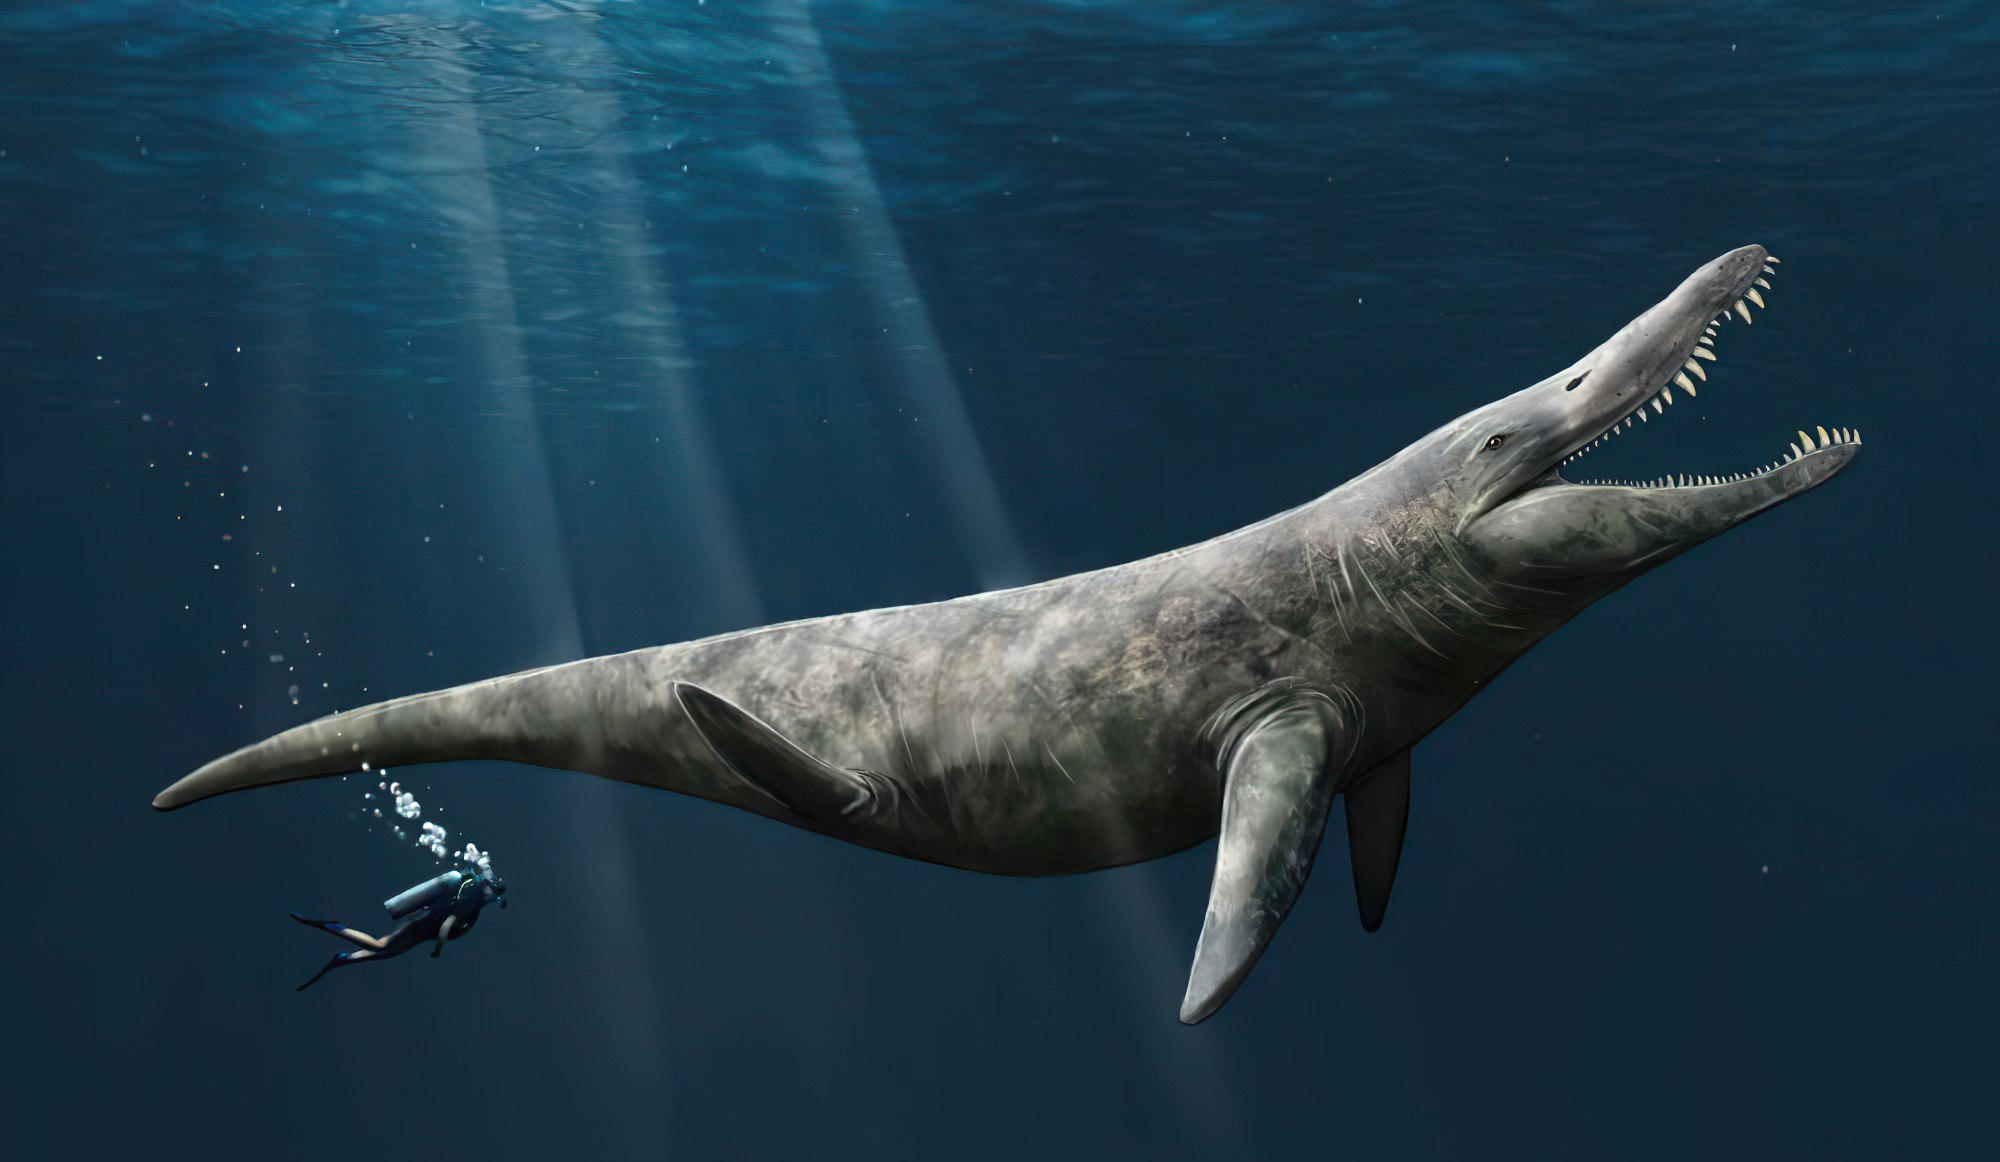 범고래 크기의 두 배 거대한 플리오사우루스가 쥬라기 후기 바다를 헤엄쳤다는 새로운 증거